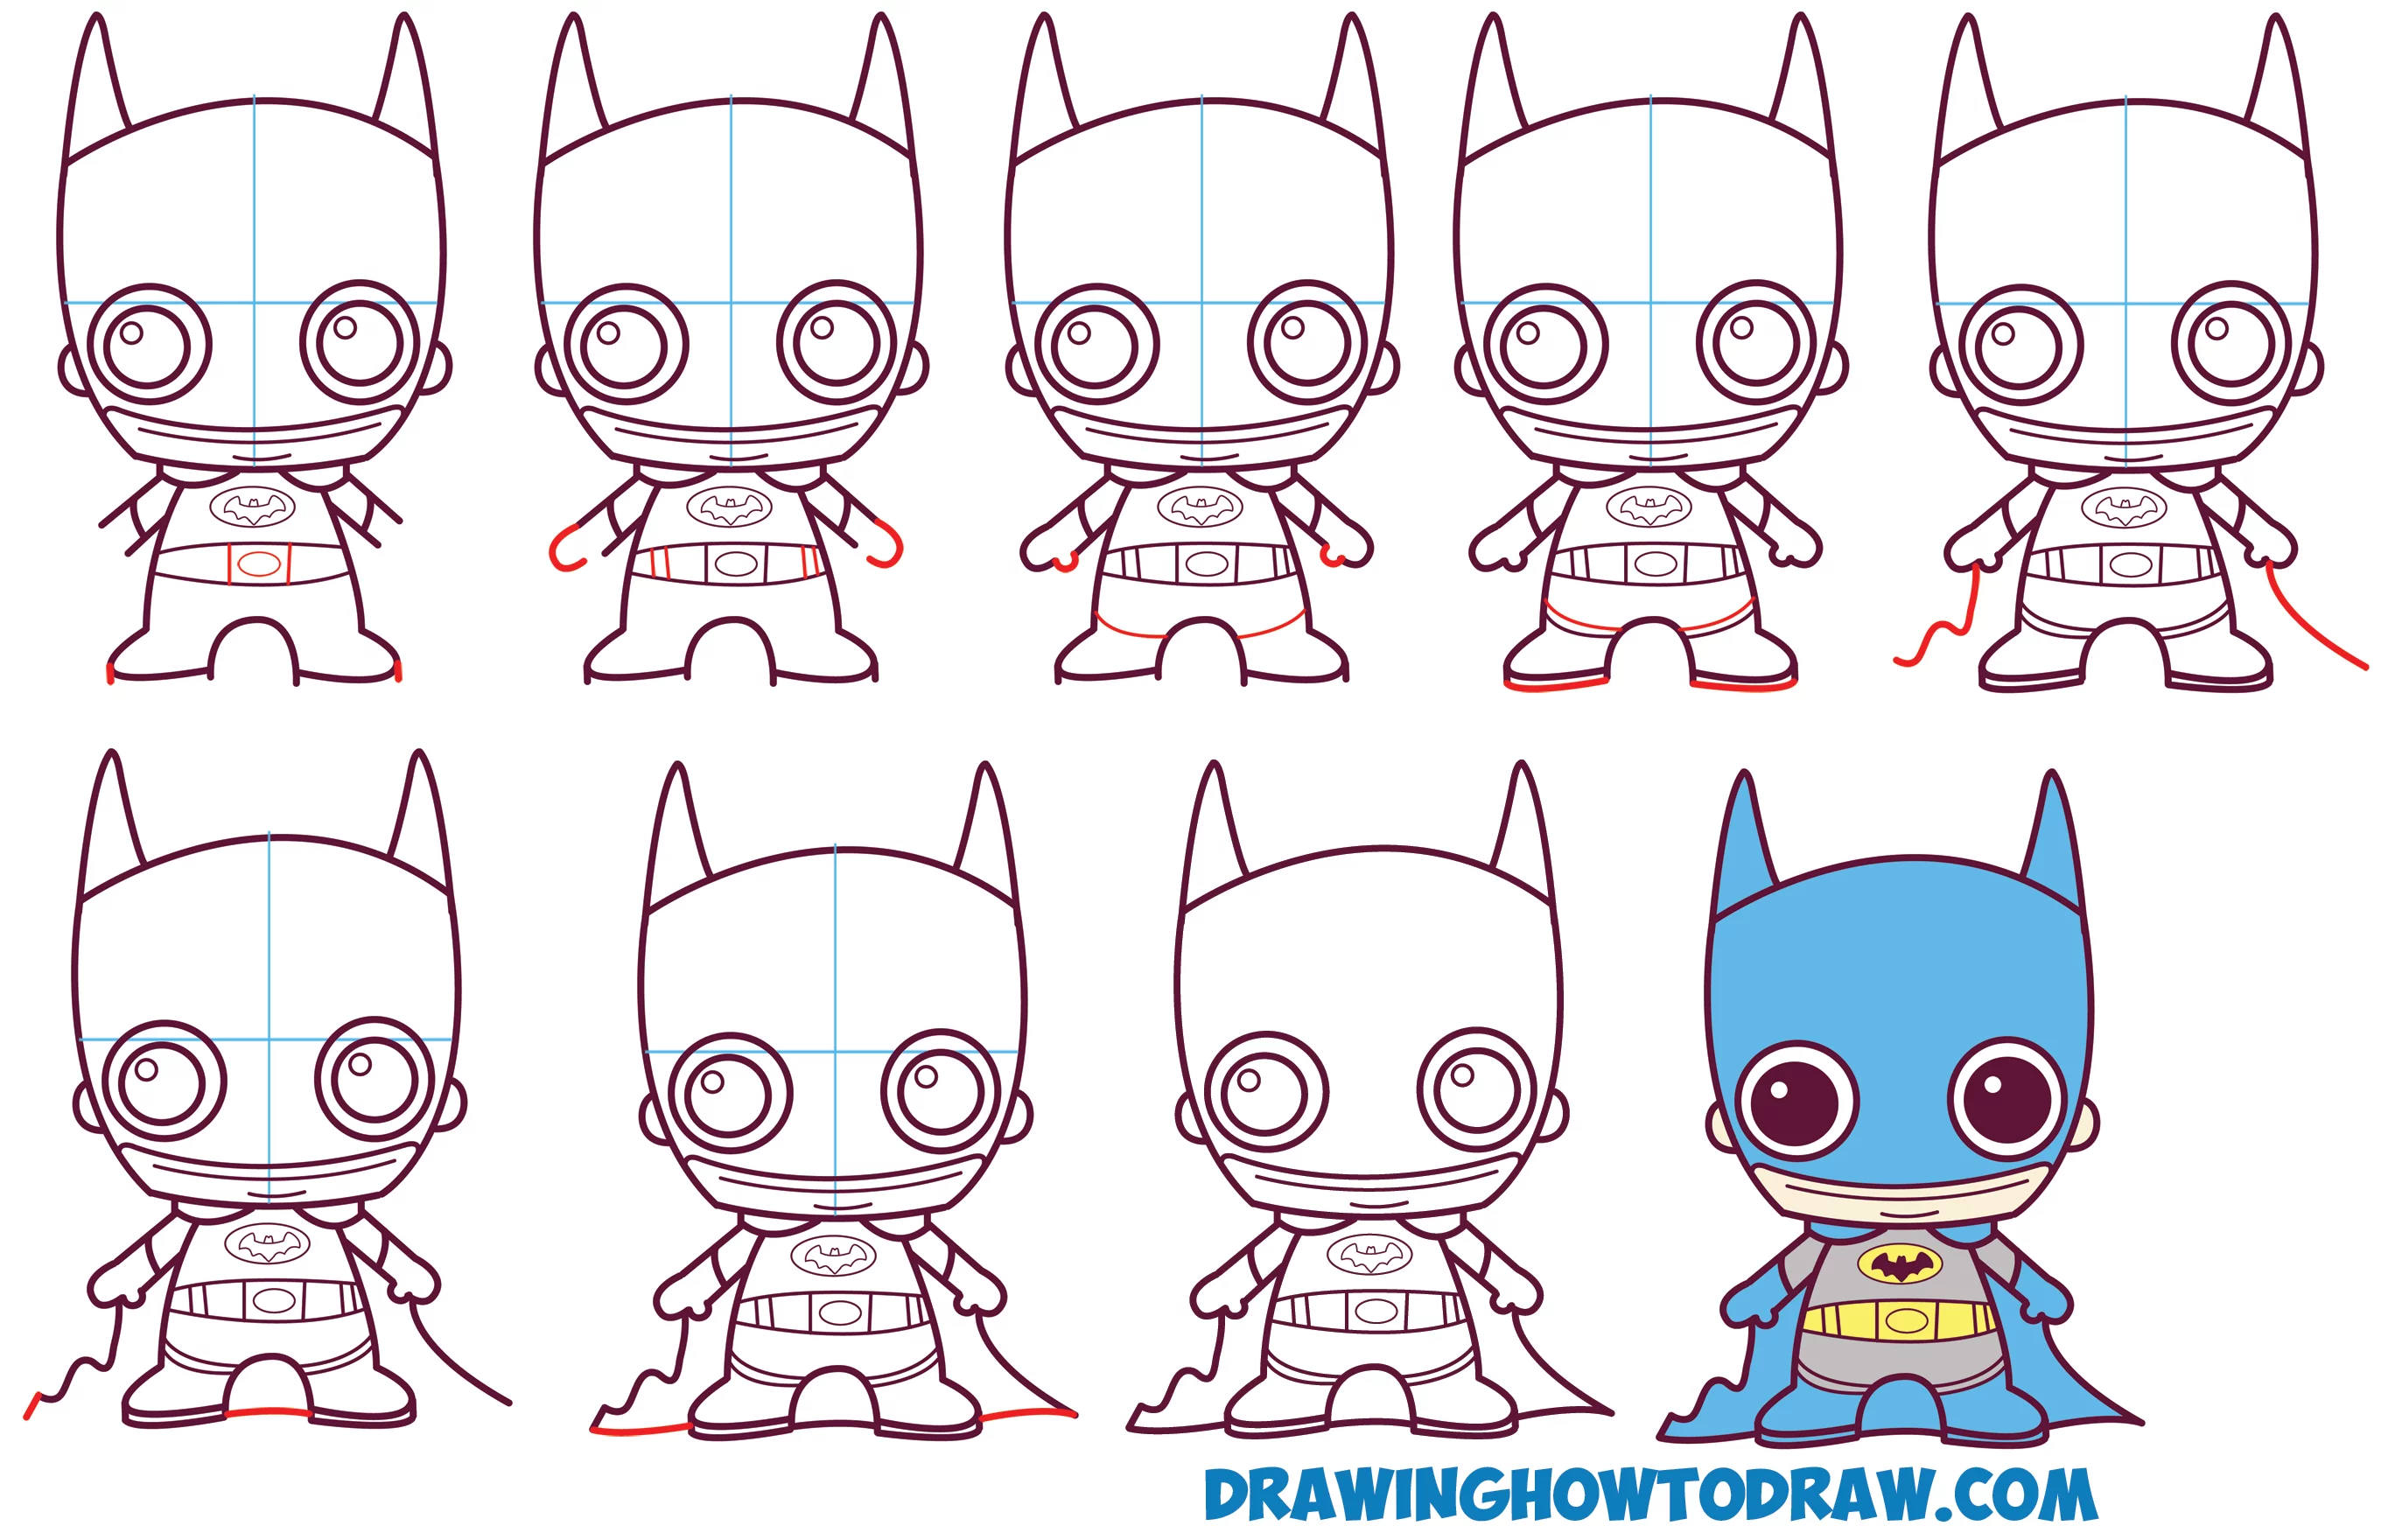 Lær hvordan man tegner sød / Baby / Chibi Batman fra DC Comics i enkle trin tegning lektion for børn